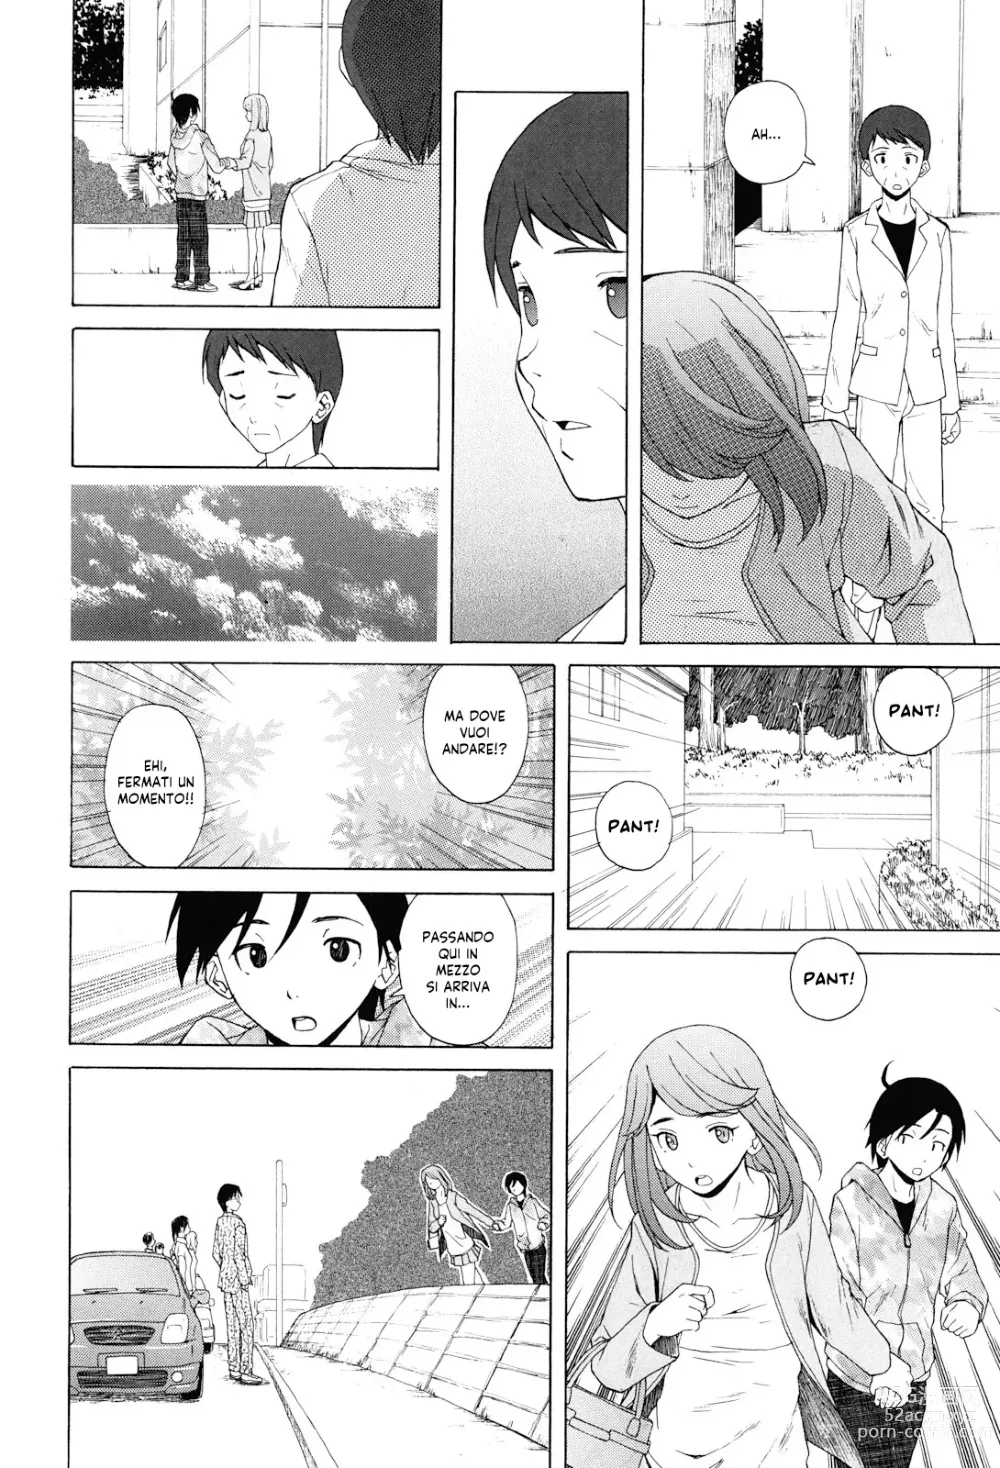 Page 251 of manga Sei Gentilmente Desiderato dalla tua Prof (decensored)